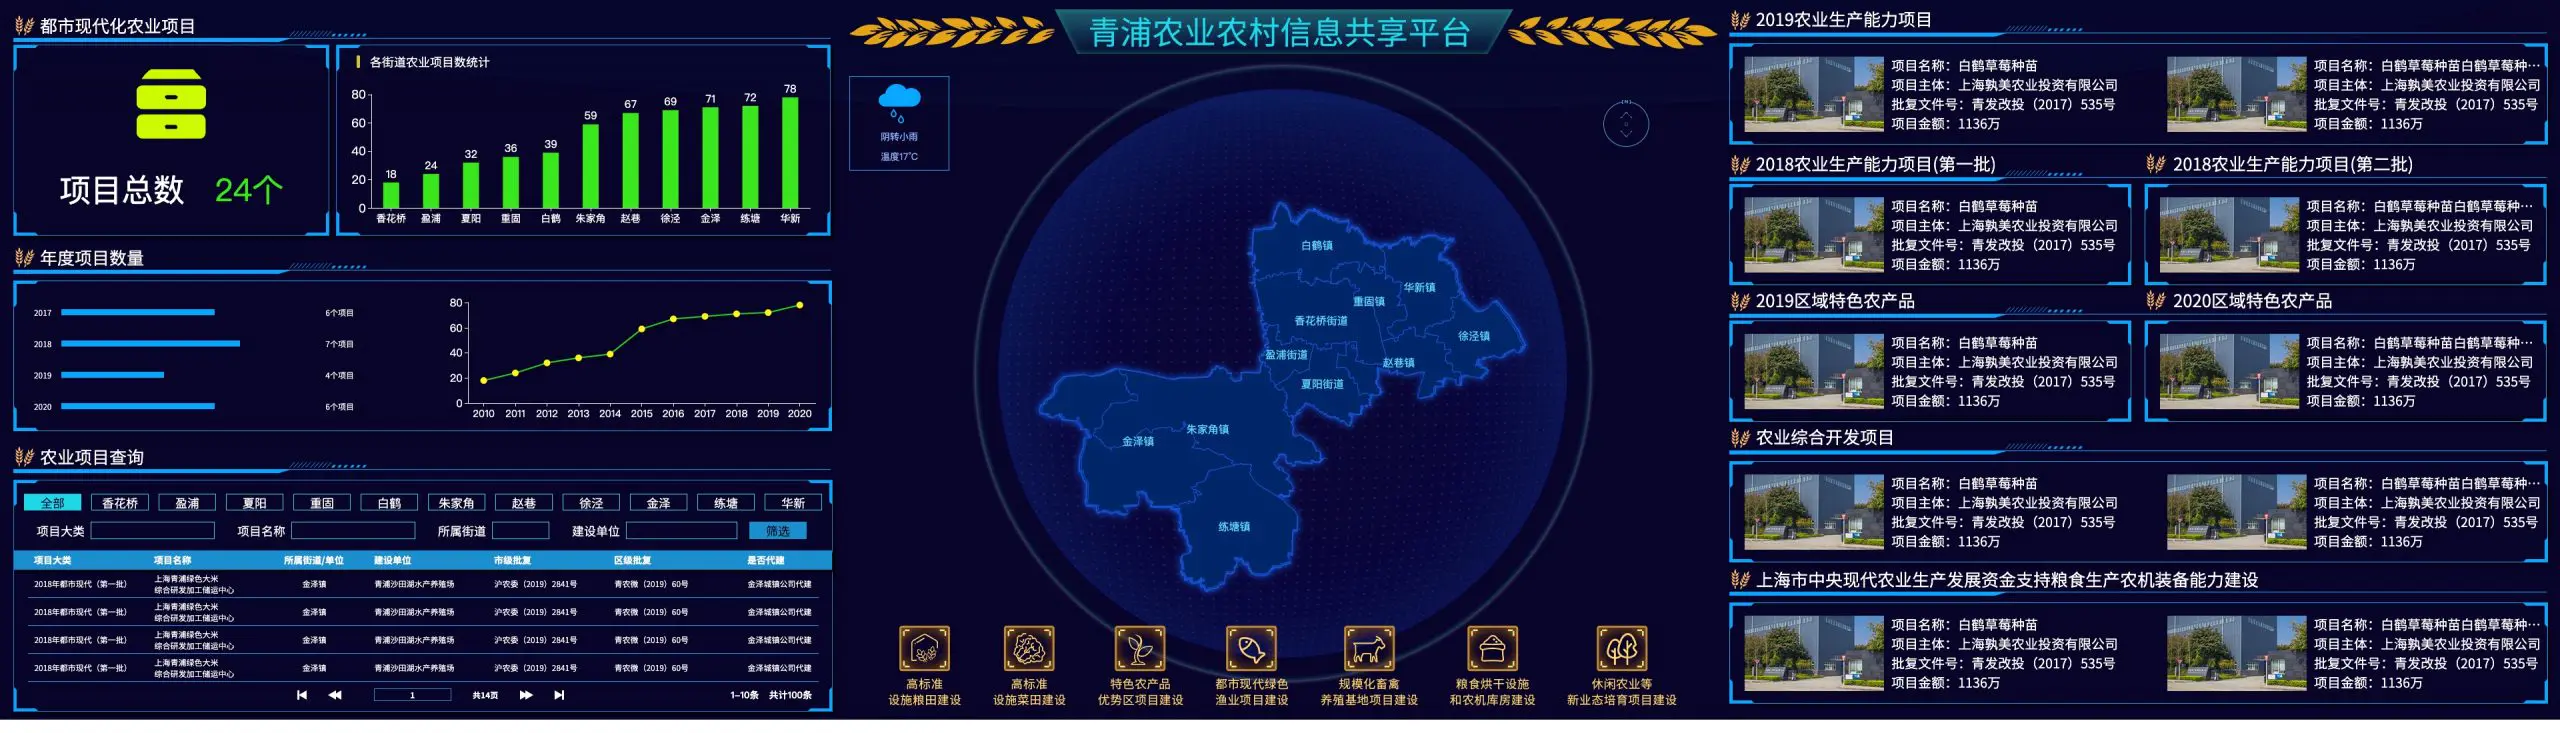 大屏 青浦农业农村信息共享平台